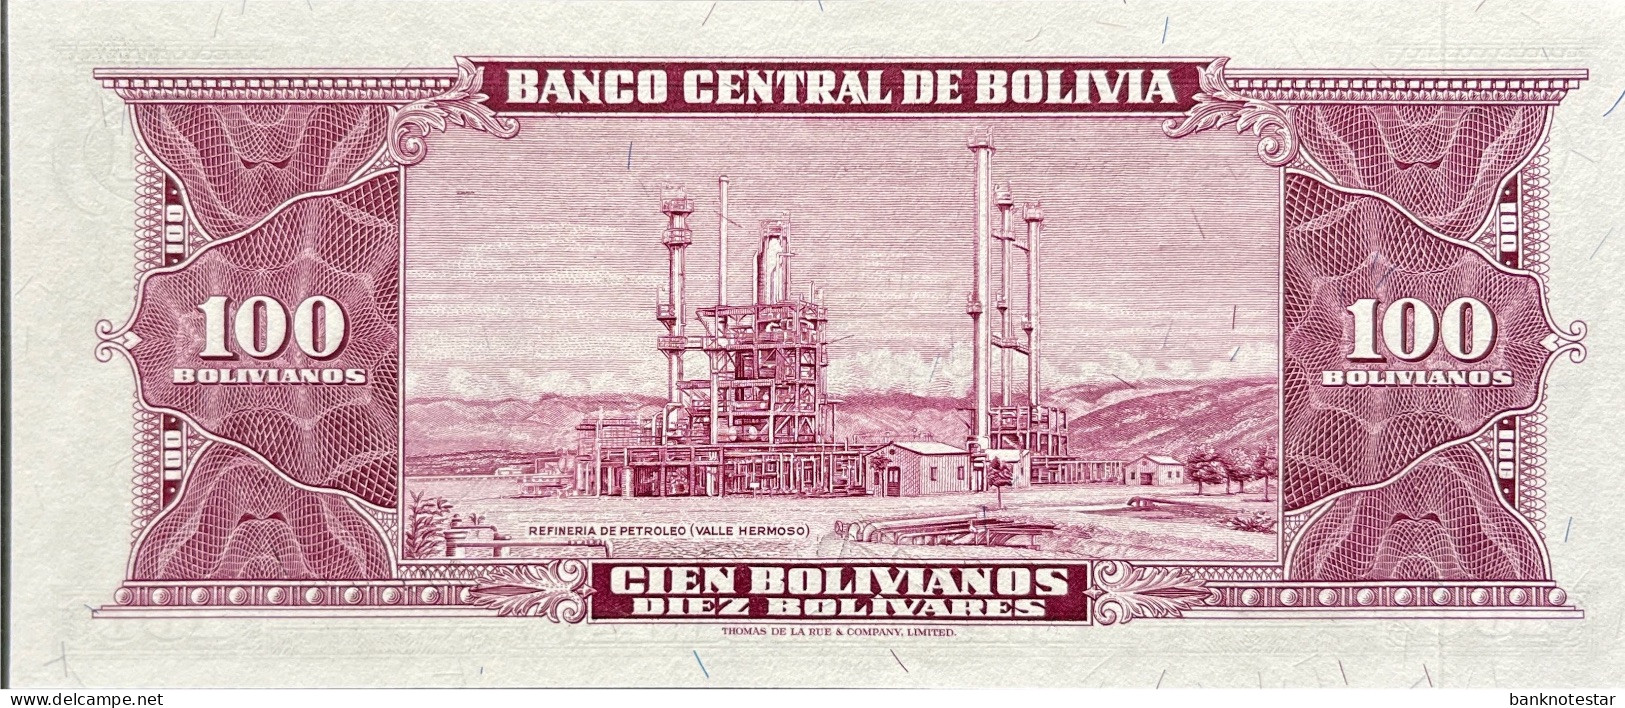 Bolivia 100 Bolivianos, P-147 (L.1945) - UNC - Bolivia